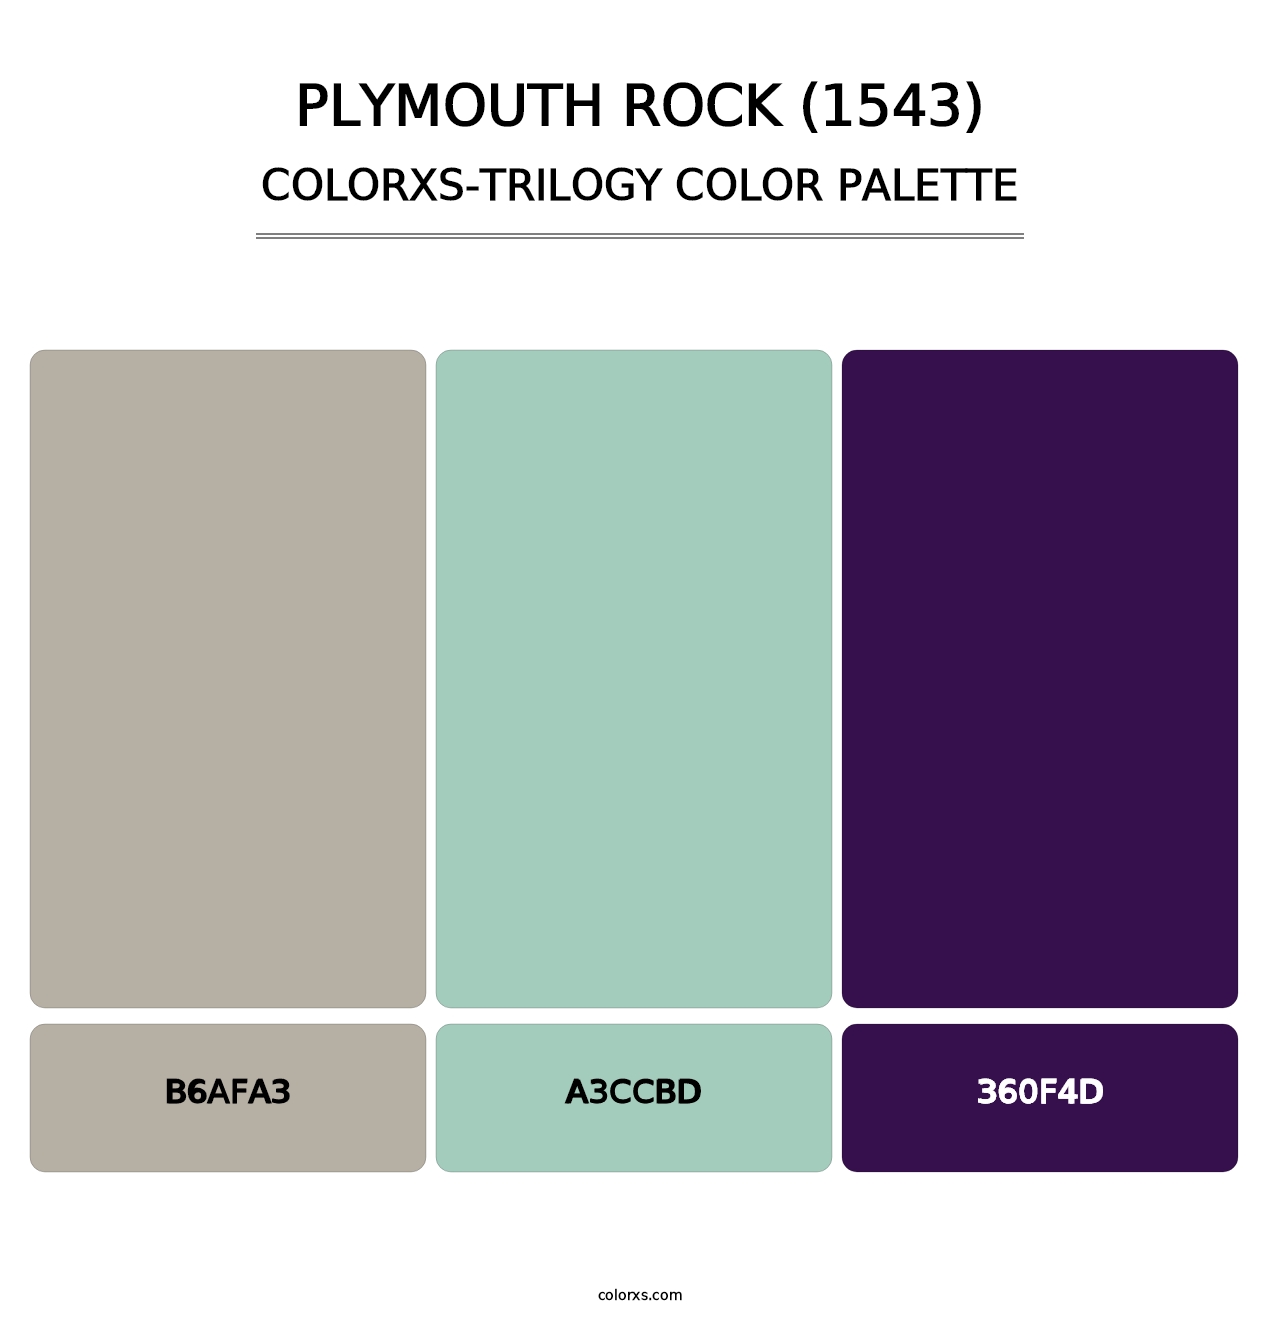 Plymouth Rock (1543) - Colorxs Trilogy Palette